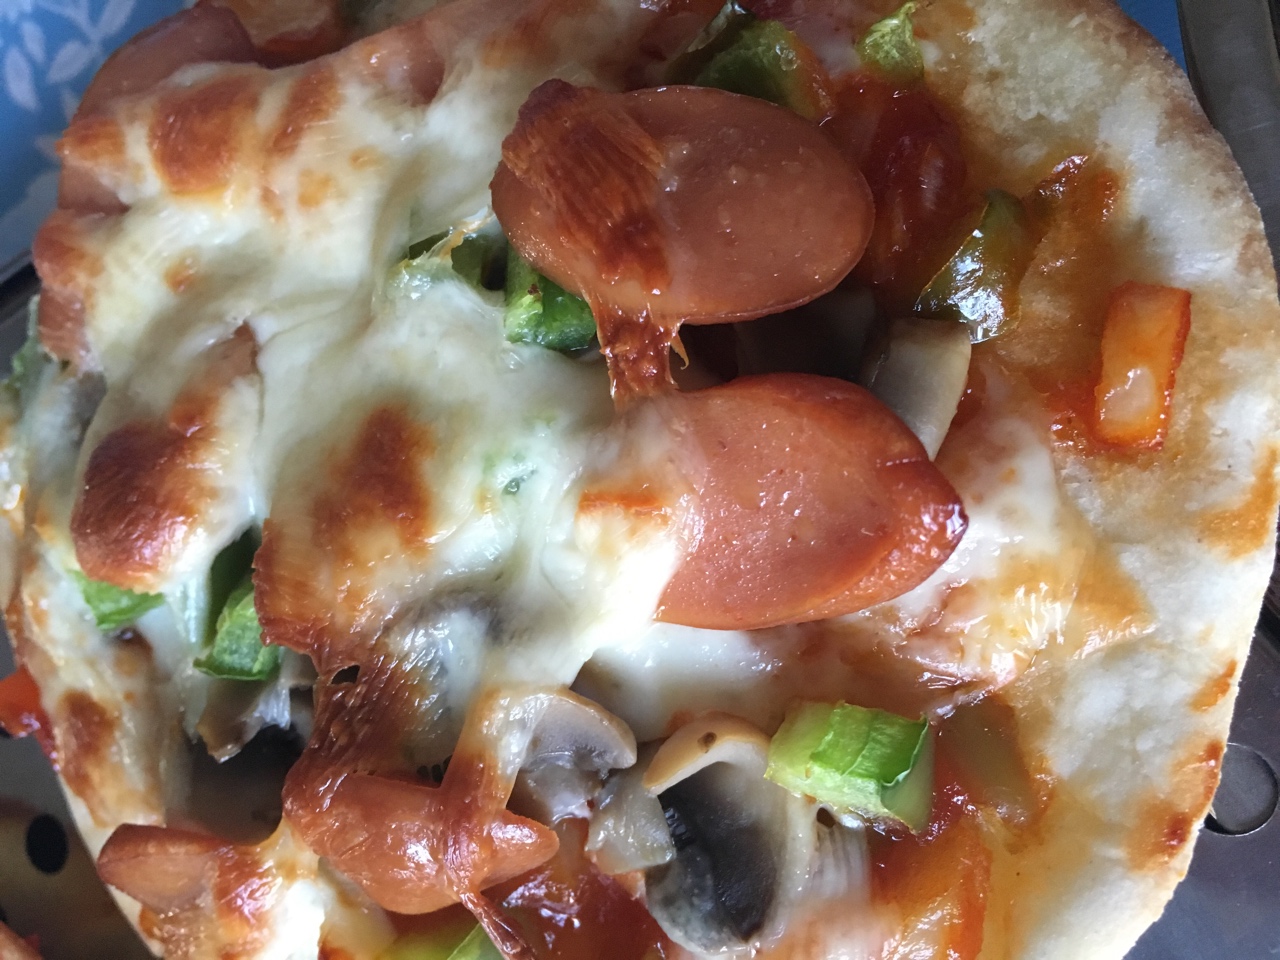 15分钟内就可以吃到的 快手薄底pizza 含披萨酱做法